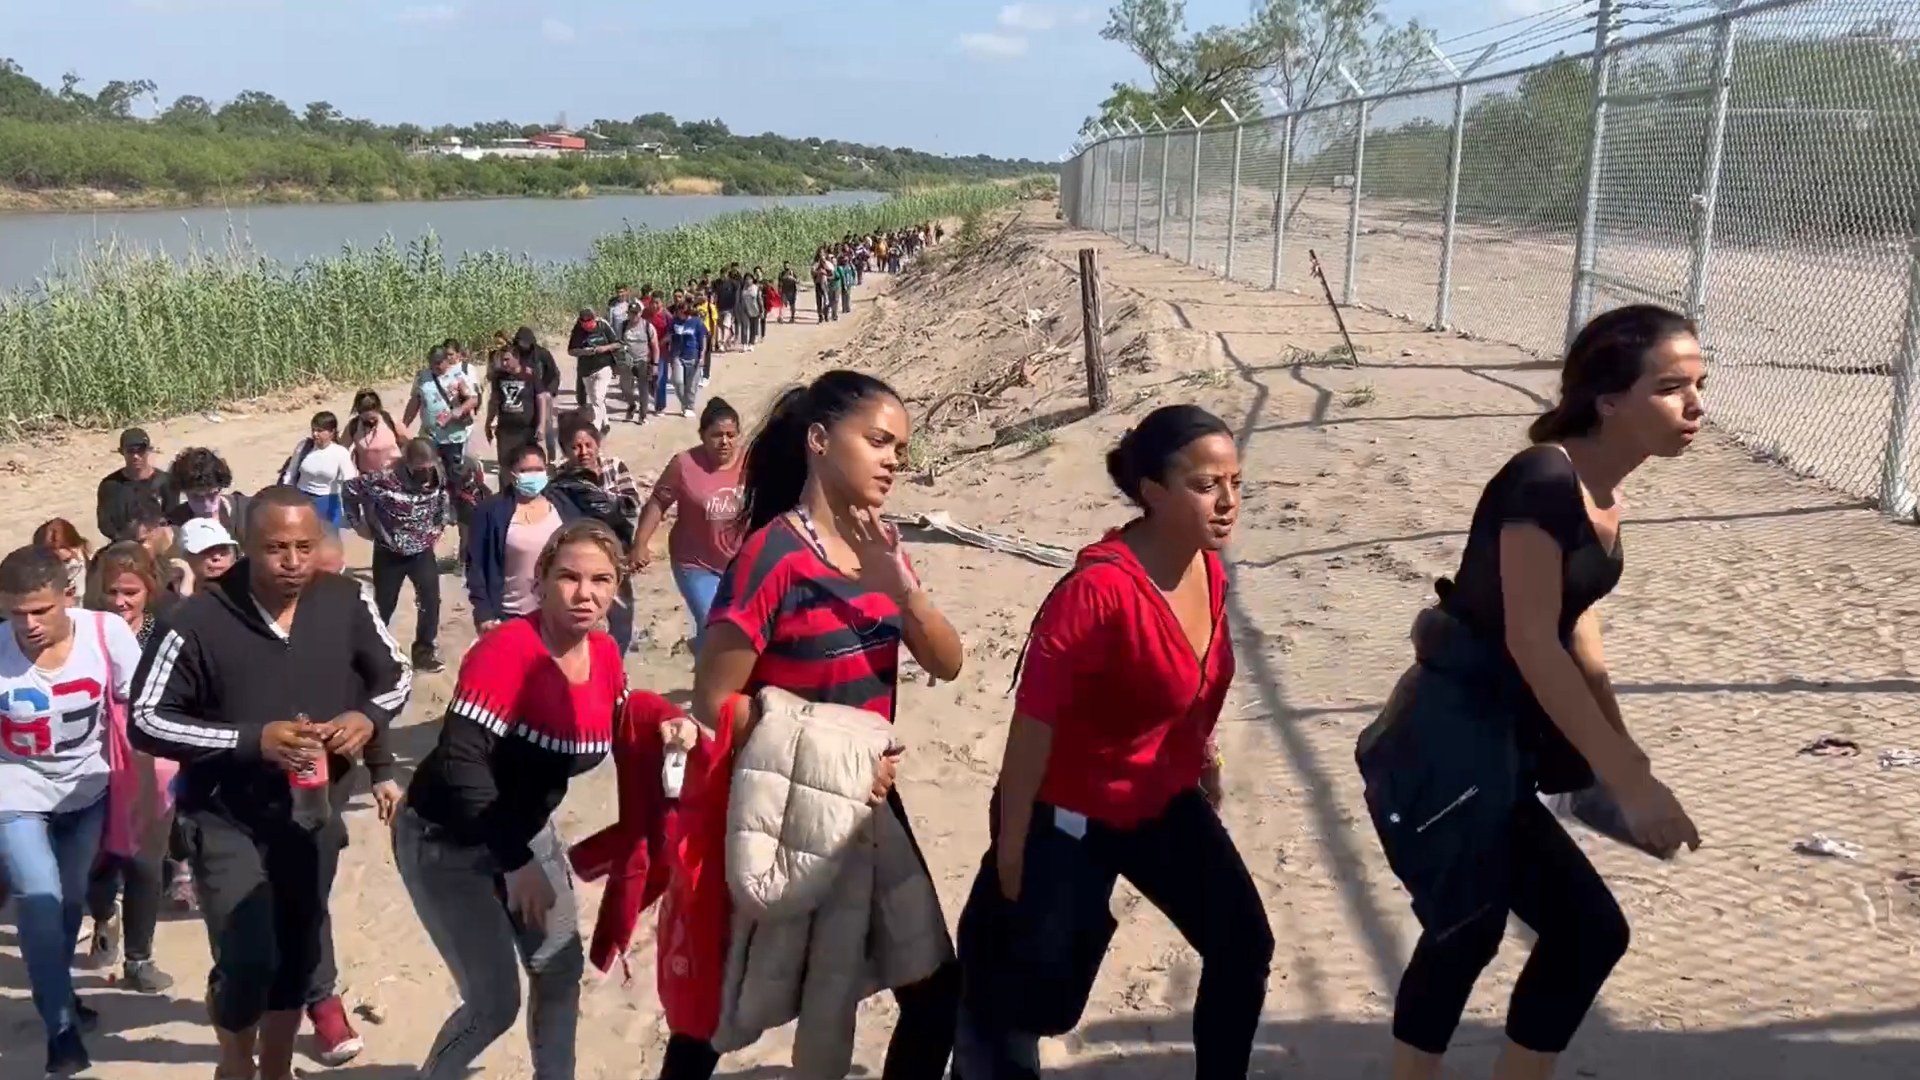 Desfile de cubanos entregándose en Eagle Pass, Texas después de cruzar el río Bravo (video)